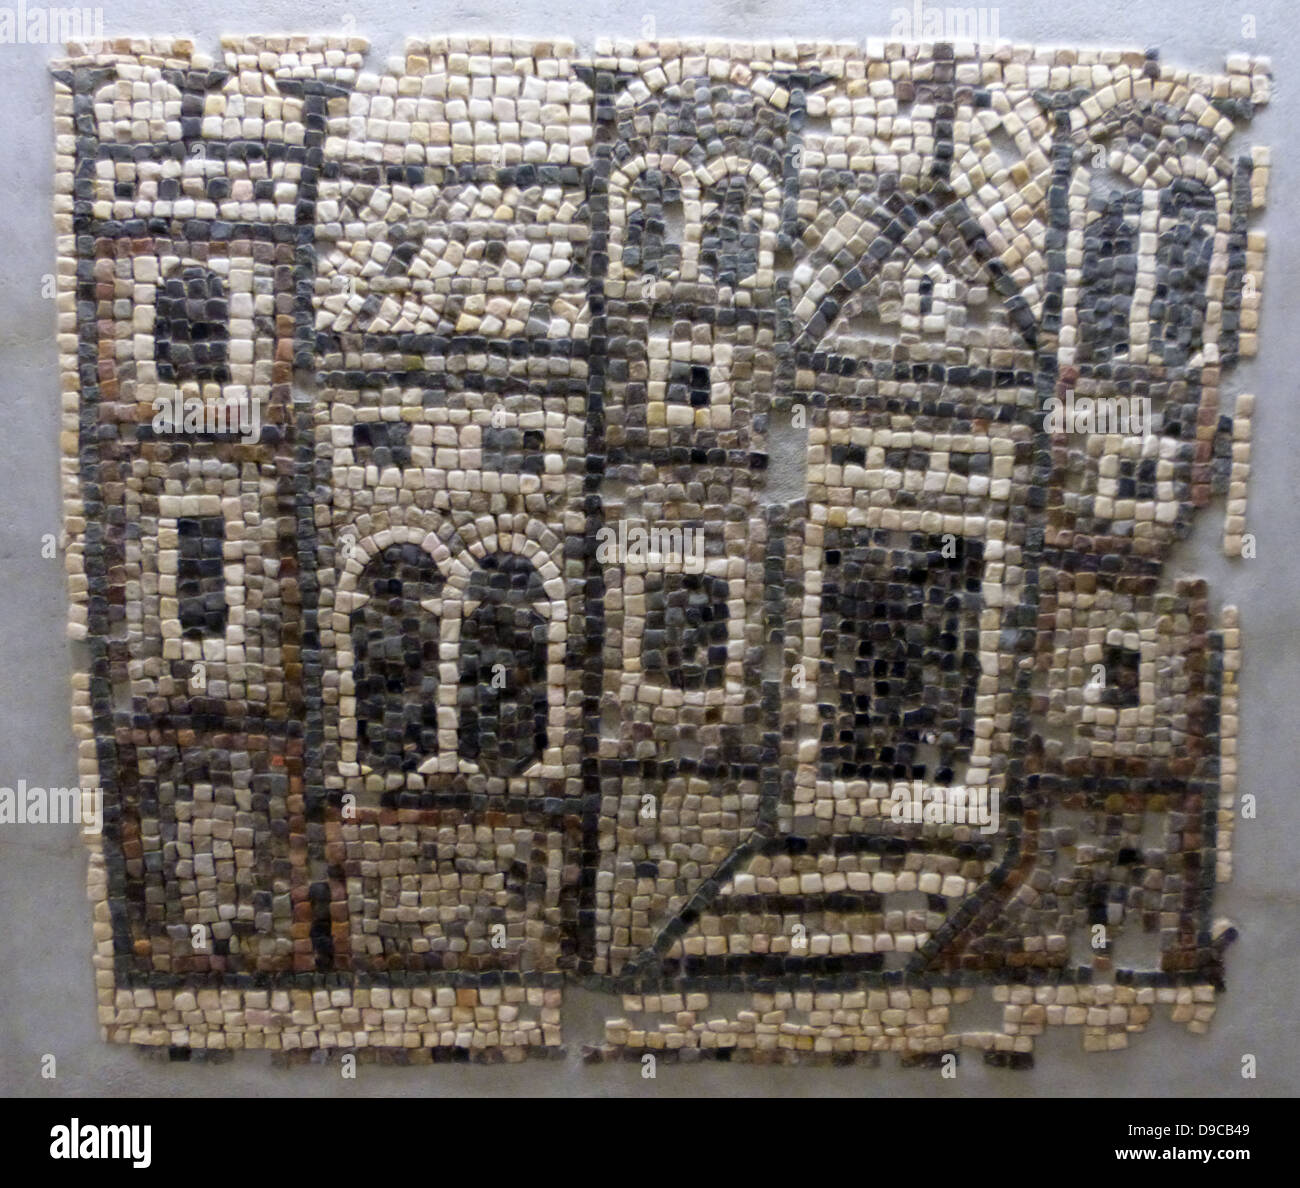 Fragment eines Mosaiks, Dekoration, der einen Kirche. Vergleichbare Darstellungen von Gebäuden mit realistischen morphologische und topographische Merkmale sind gut aus dem Mosaik gehwege von Syrien bekannt. Aus dem östlichen Mittelmeerraum, 5. und 6. Jahrhundert. Stockfoto